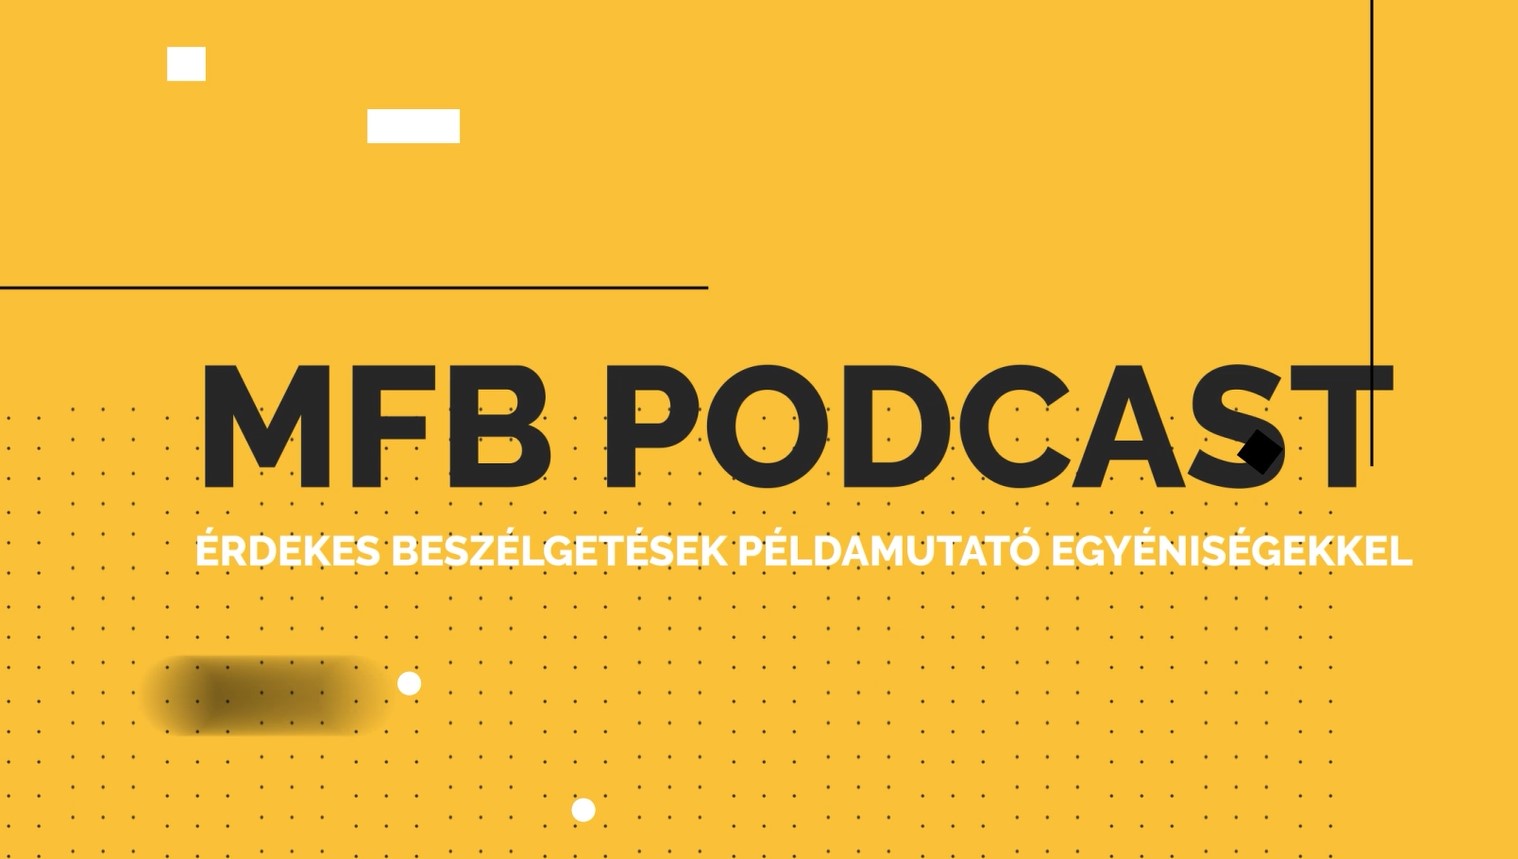 MFB Podcast - Beszélgetés Dr. Sándor Renáta geográfus-geológussal a jövő mezőgazdaságáról